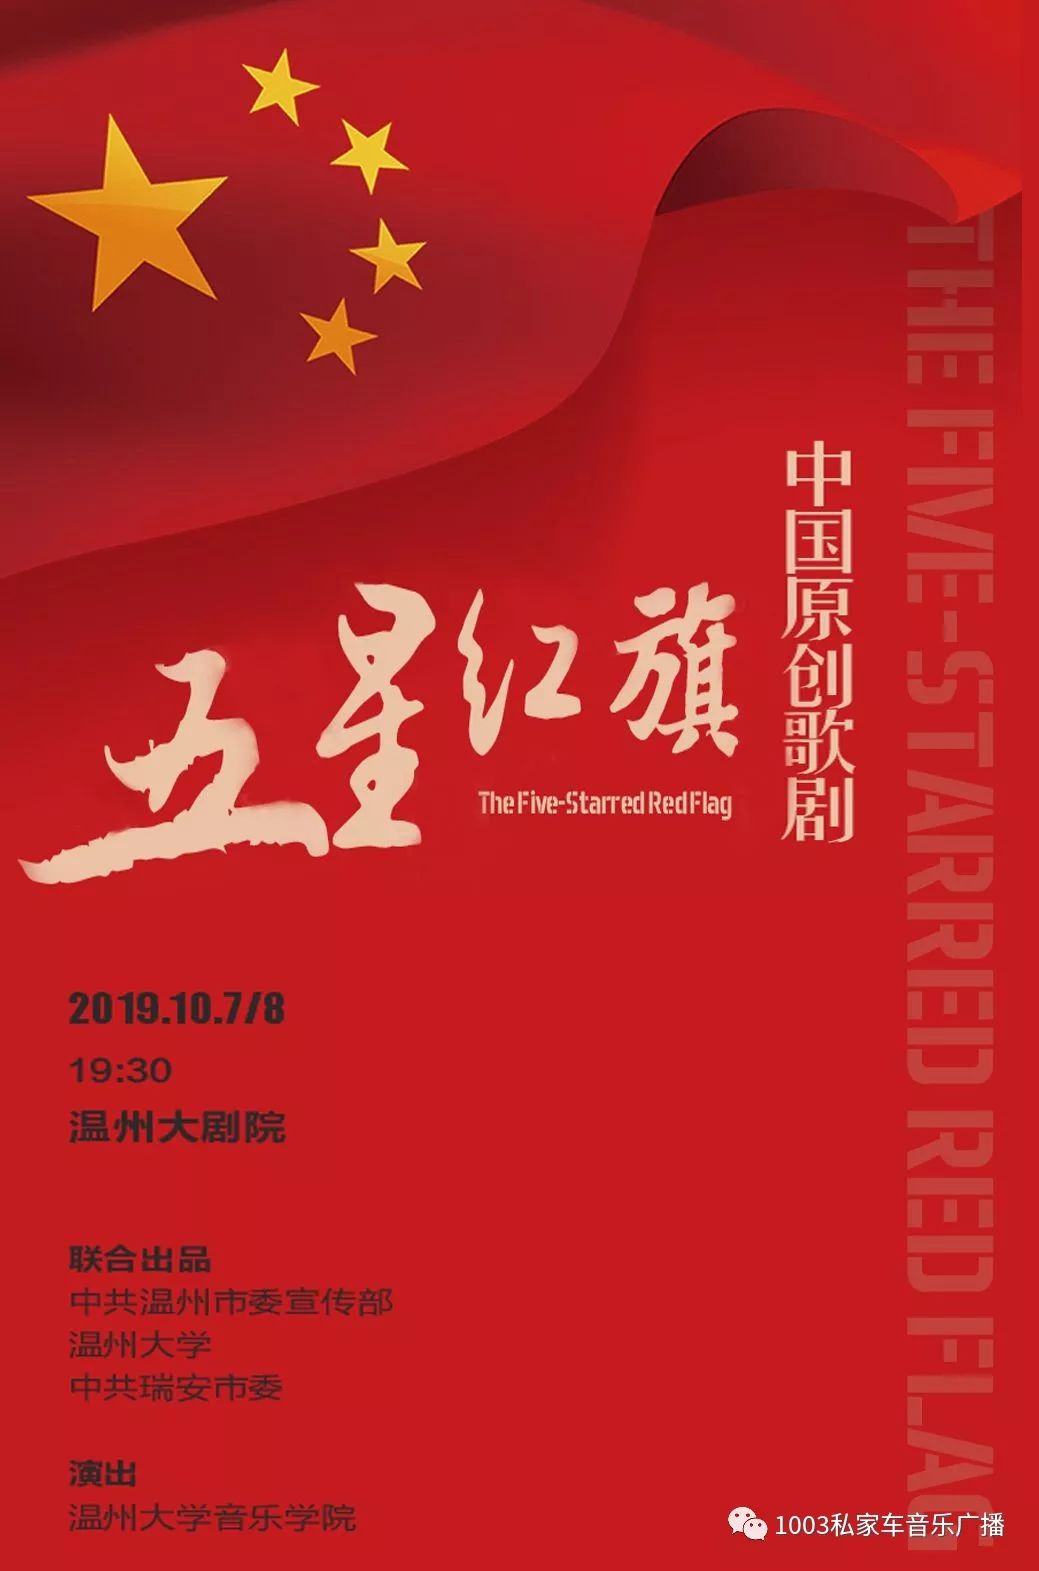 中国原创歌剧《五星红旗》即将公演!献礼新中国成立70周年